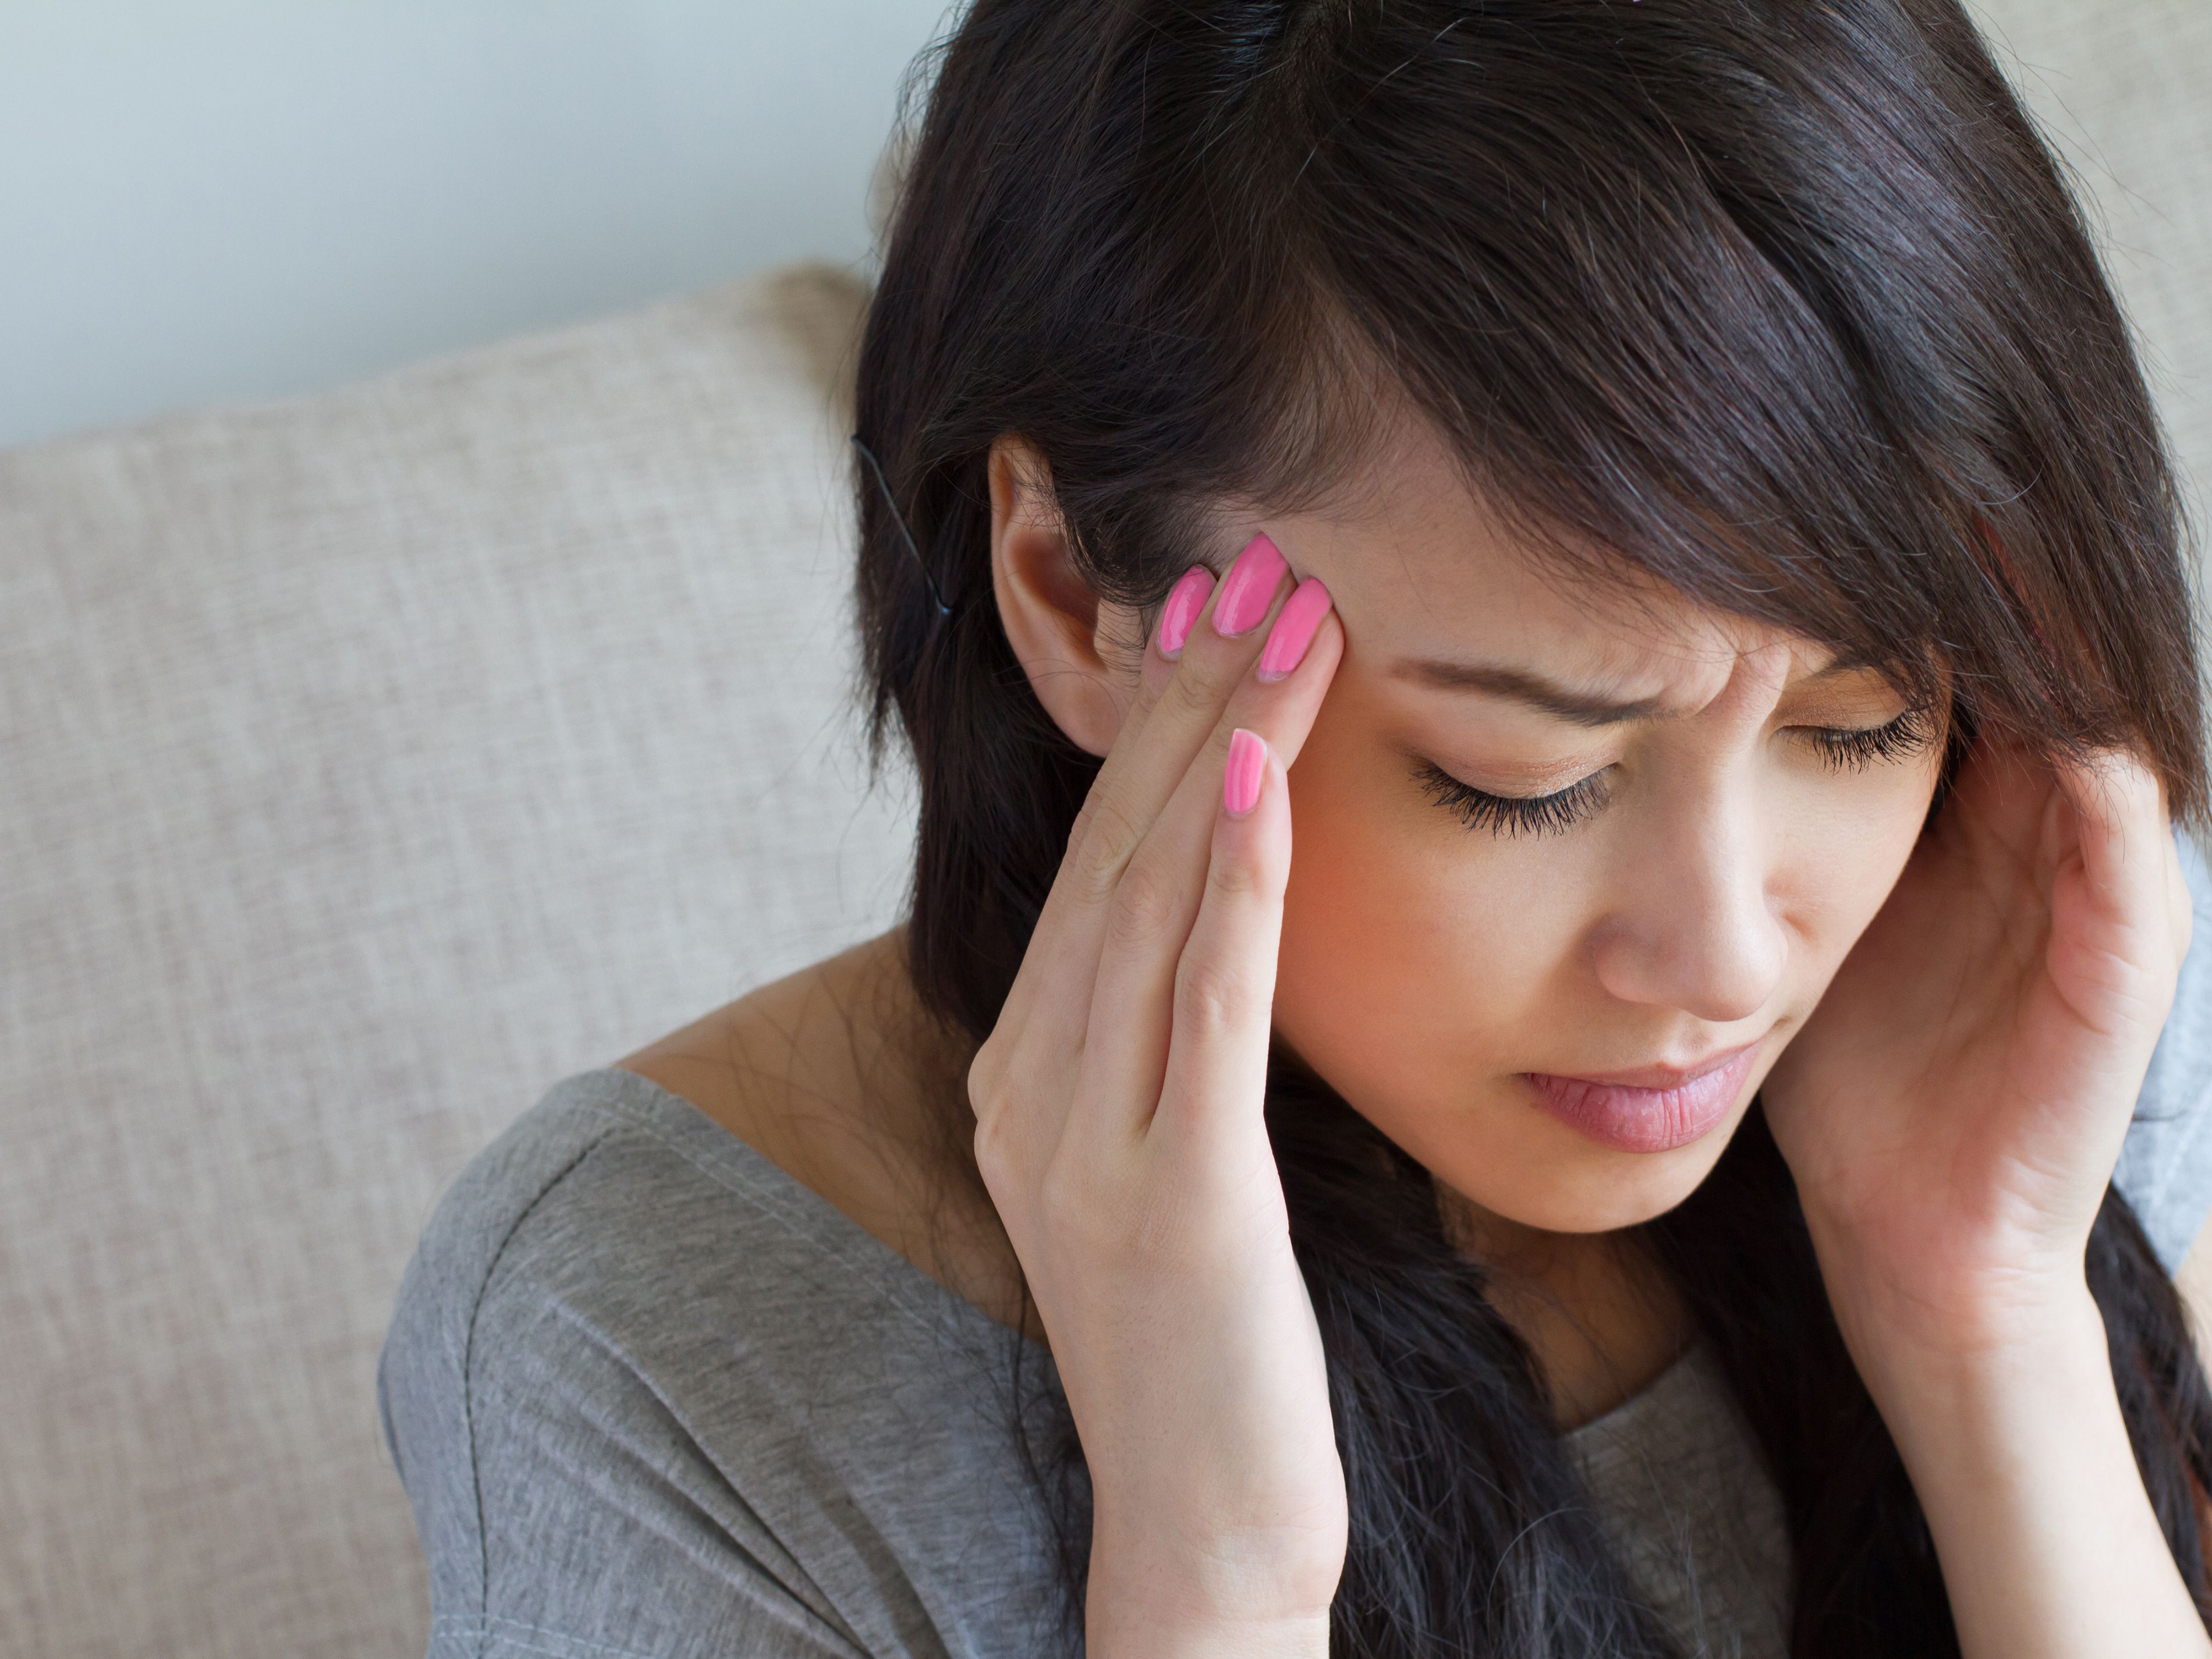 8-ways-to-relieve-migraine-symptoms.jpg